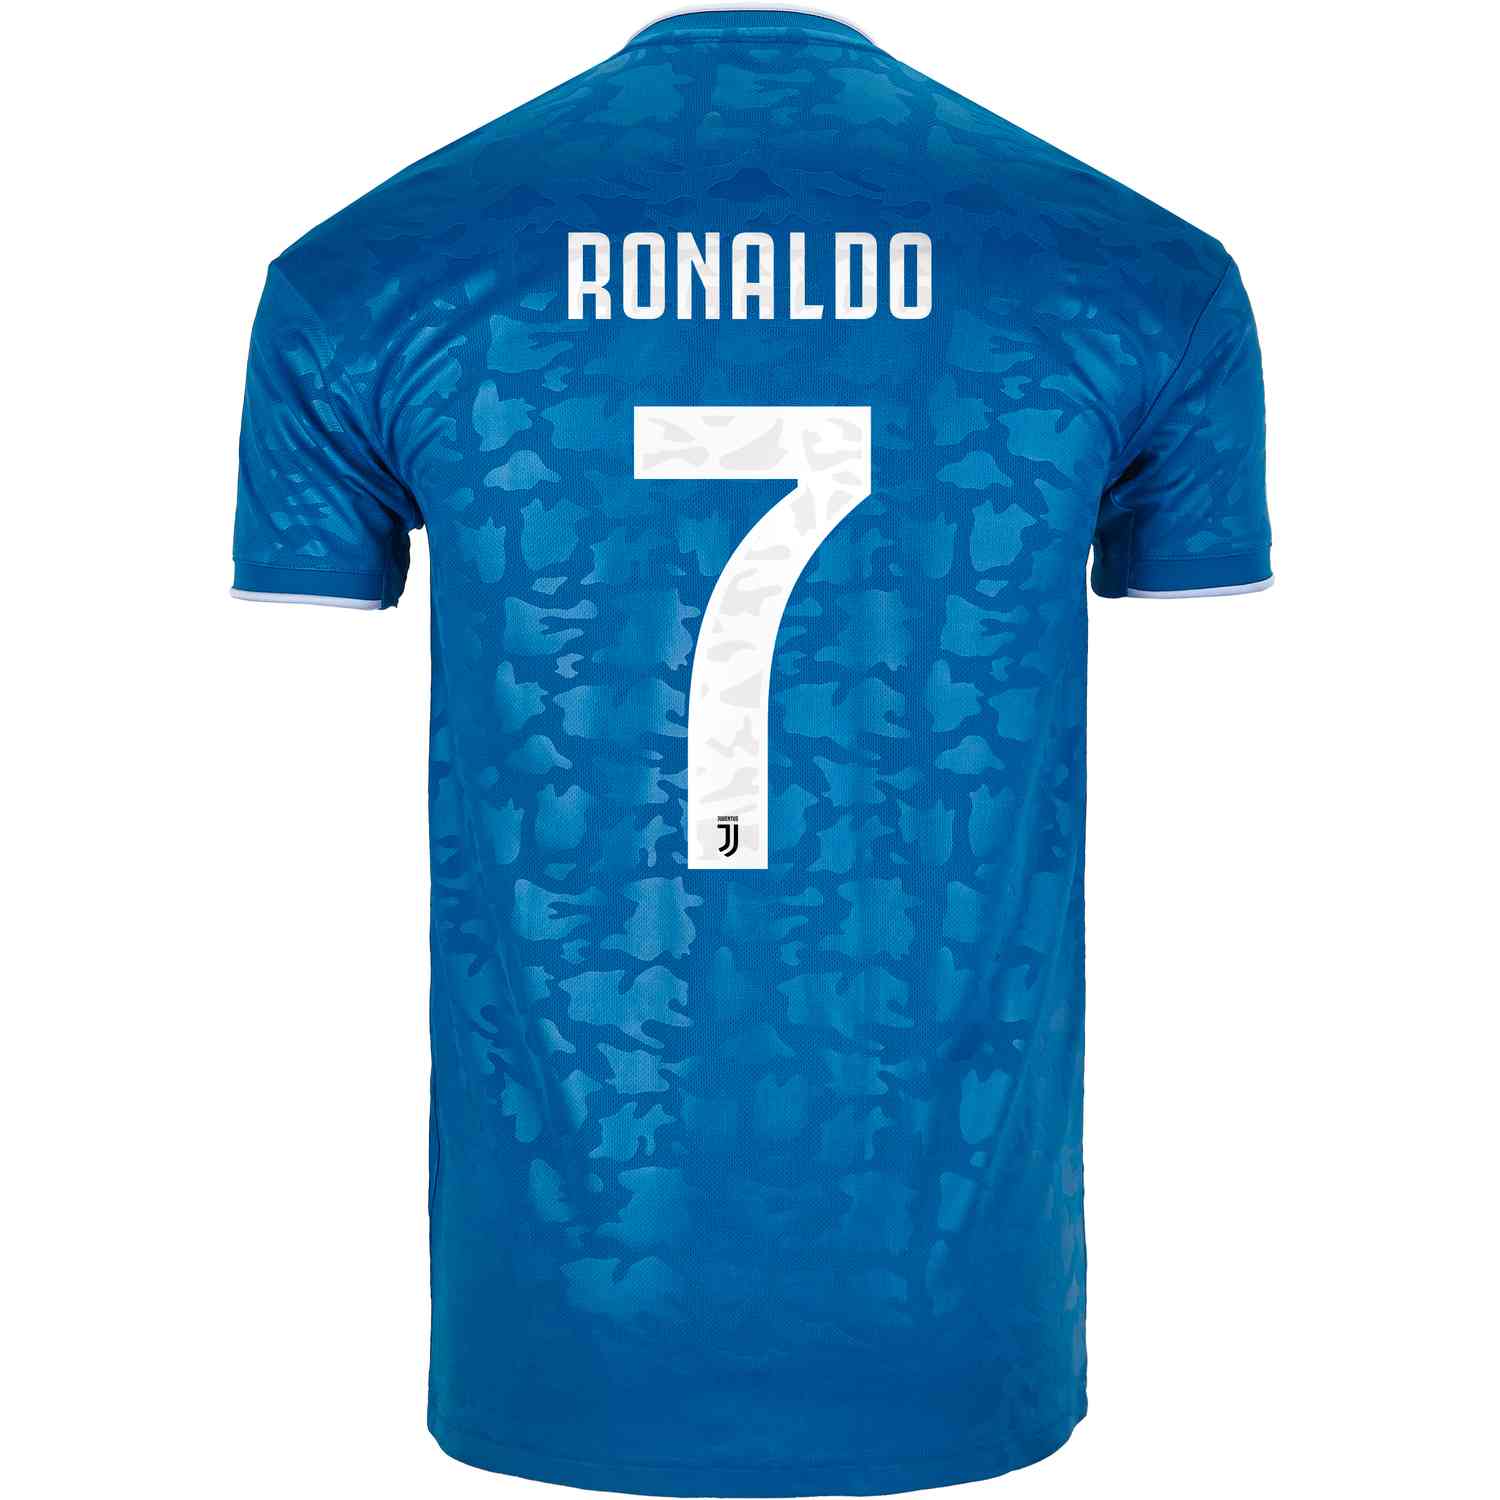 Cristiano Ronaldo Juventus Jersey 2019 / 2019 20 Adidas Cristiano ...